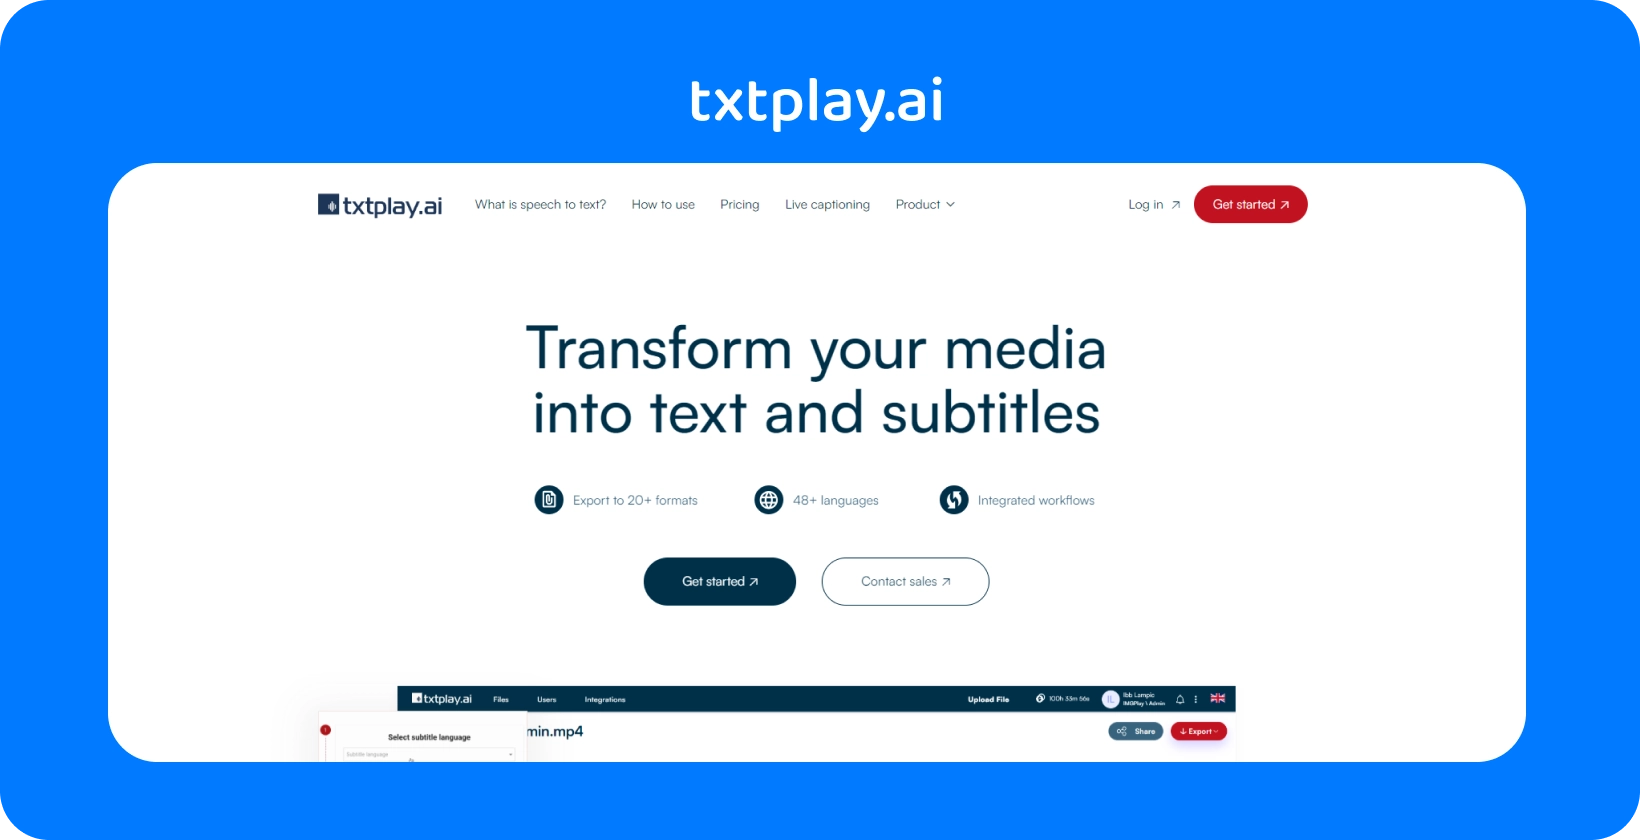 Transformez les médias en texte et en sous-titres avec txtplay.ai, prenant en charge 48+ langues et 20+ formats.